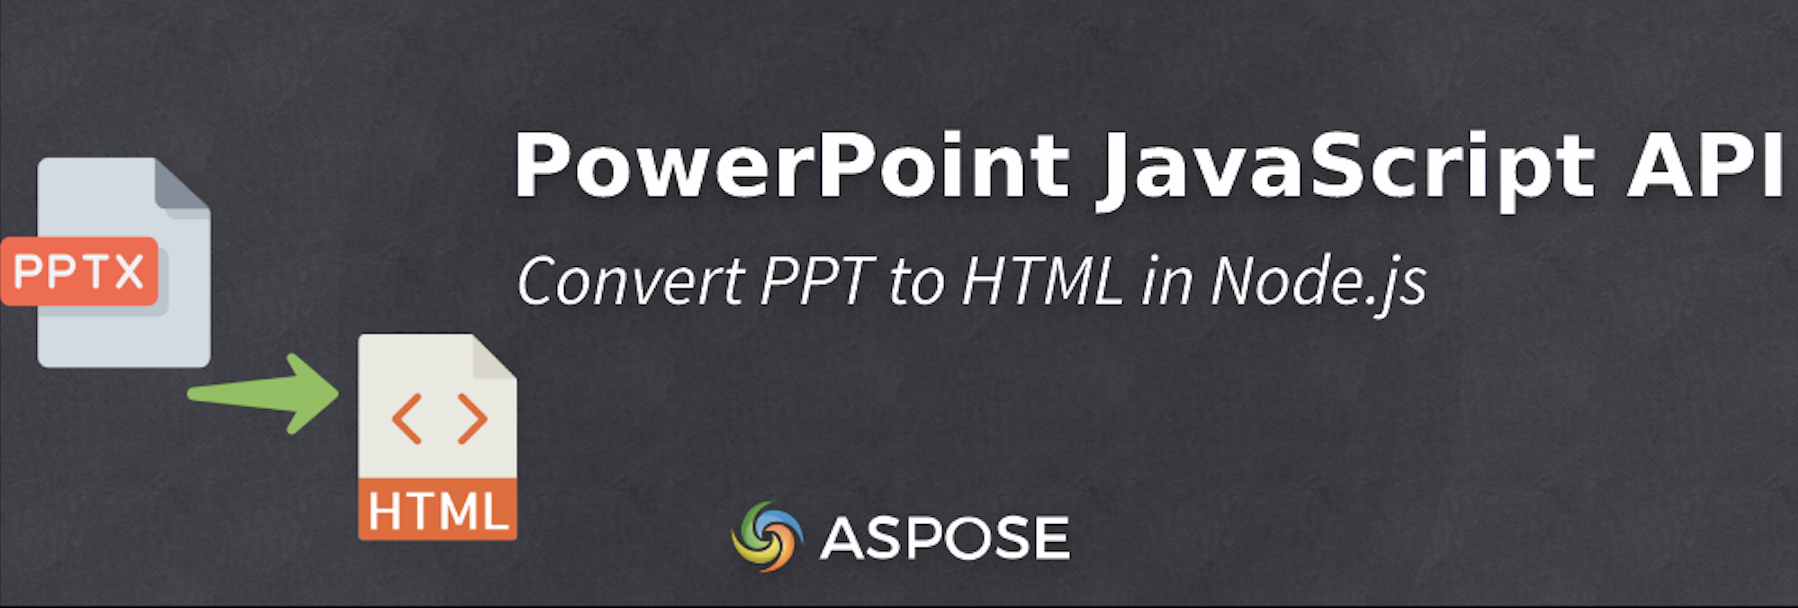 Node.js'de PPT'yi HTML'ye dönüştürme - PowerPoint JavaScript API